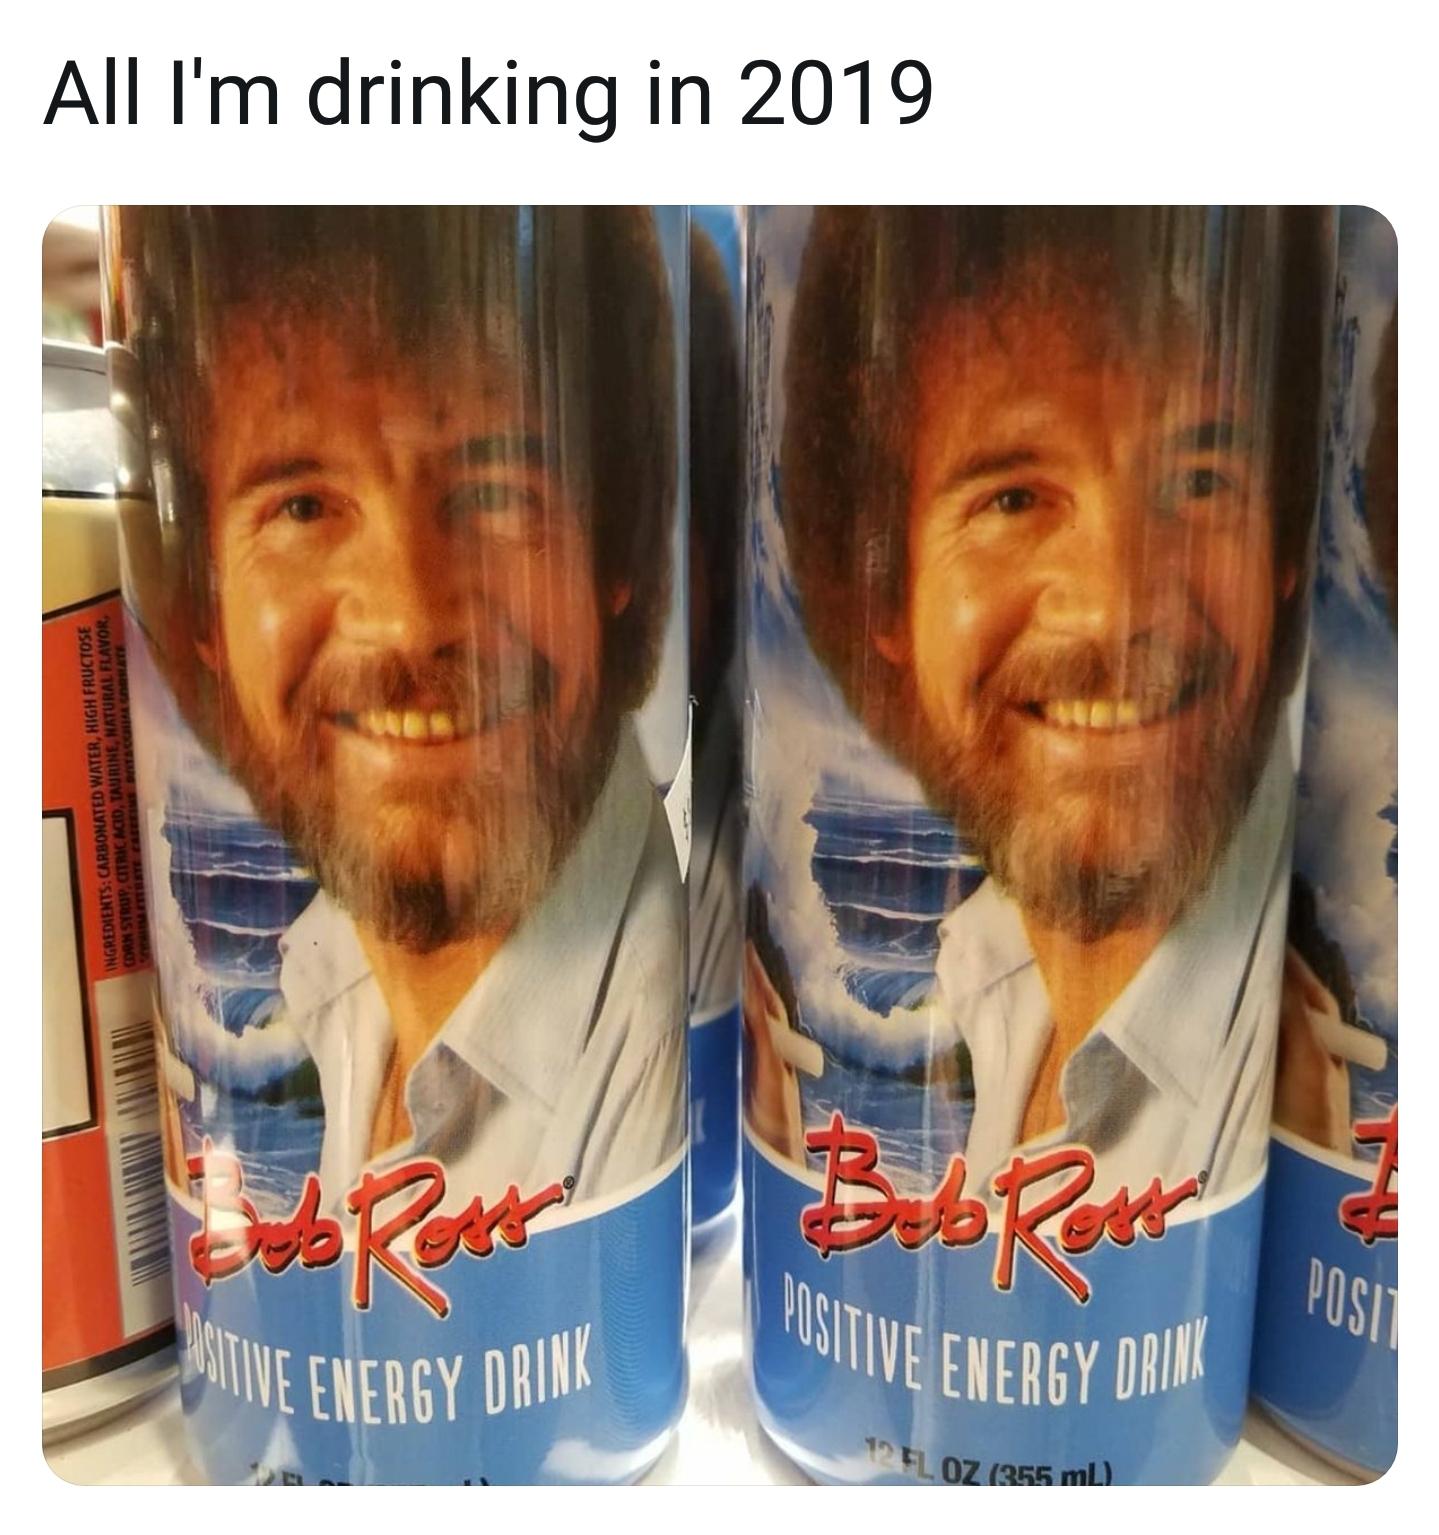 bob ross energy drink meme - All I'm drinking in 2019 Bebe Red Positive Energy Drive Native Energy Drink